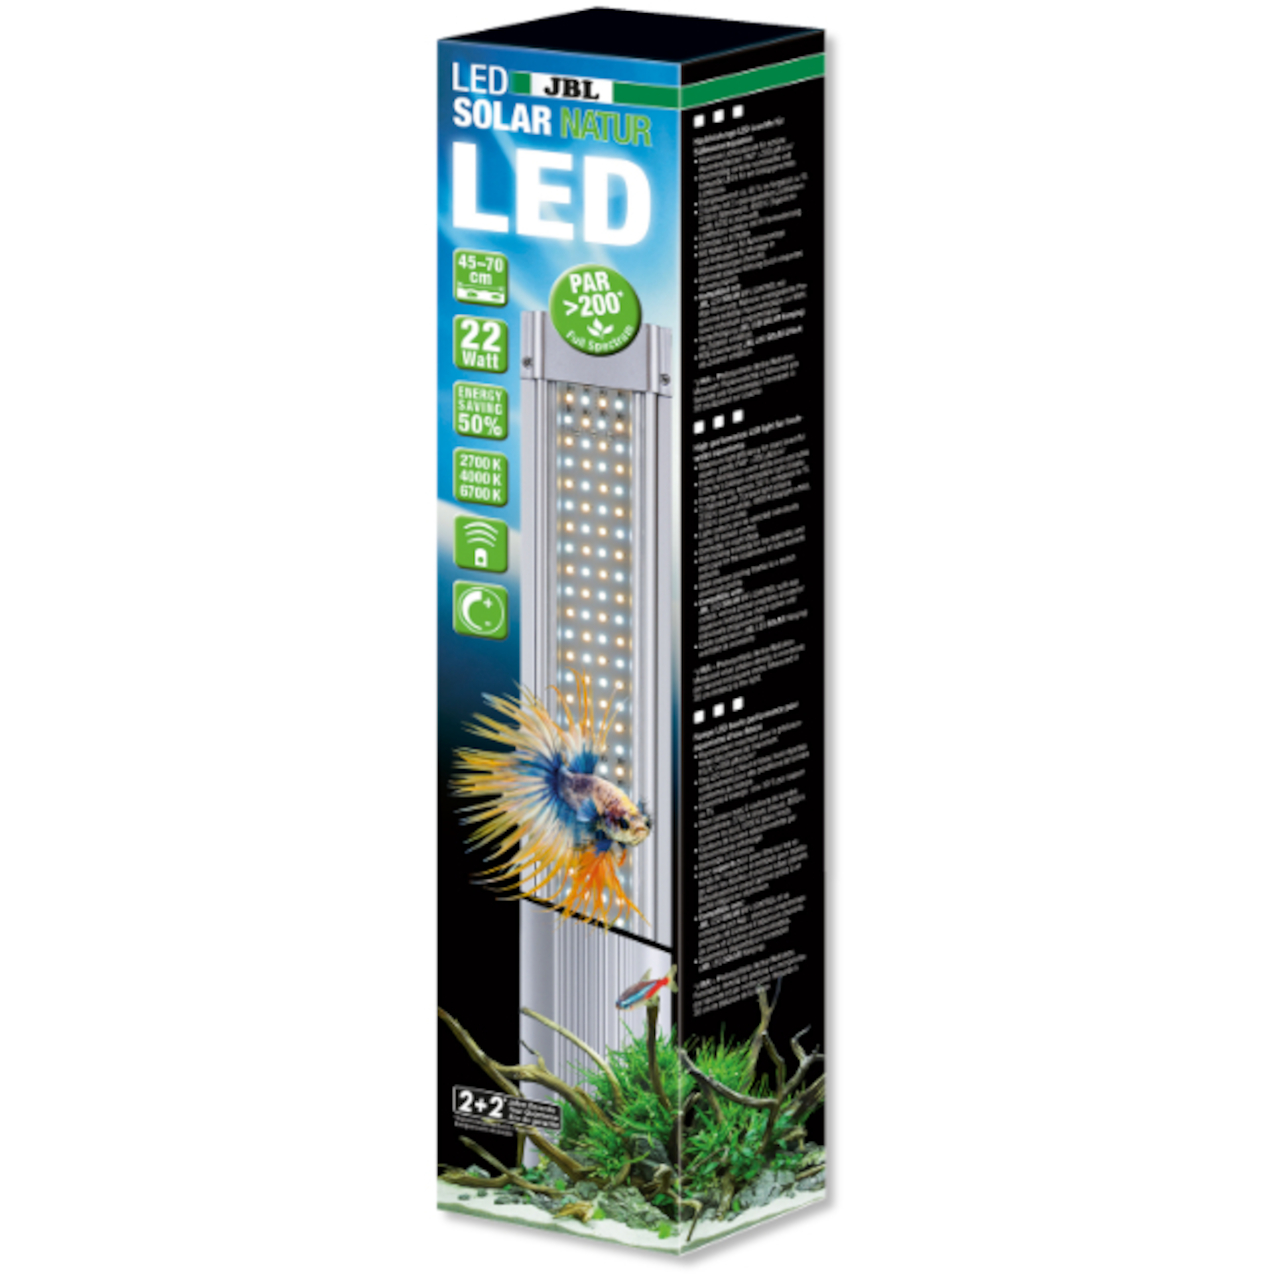 JBL LED Solar Natur 24 Watt